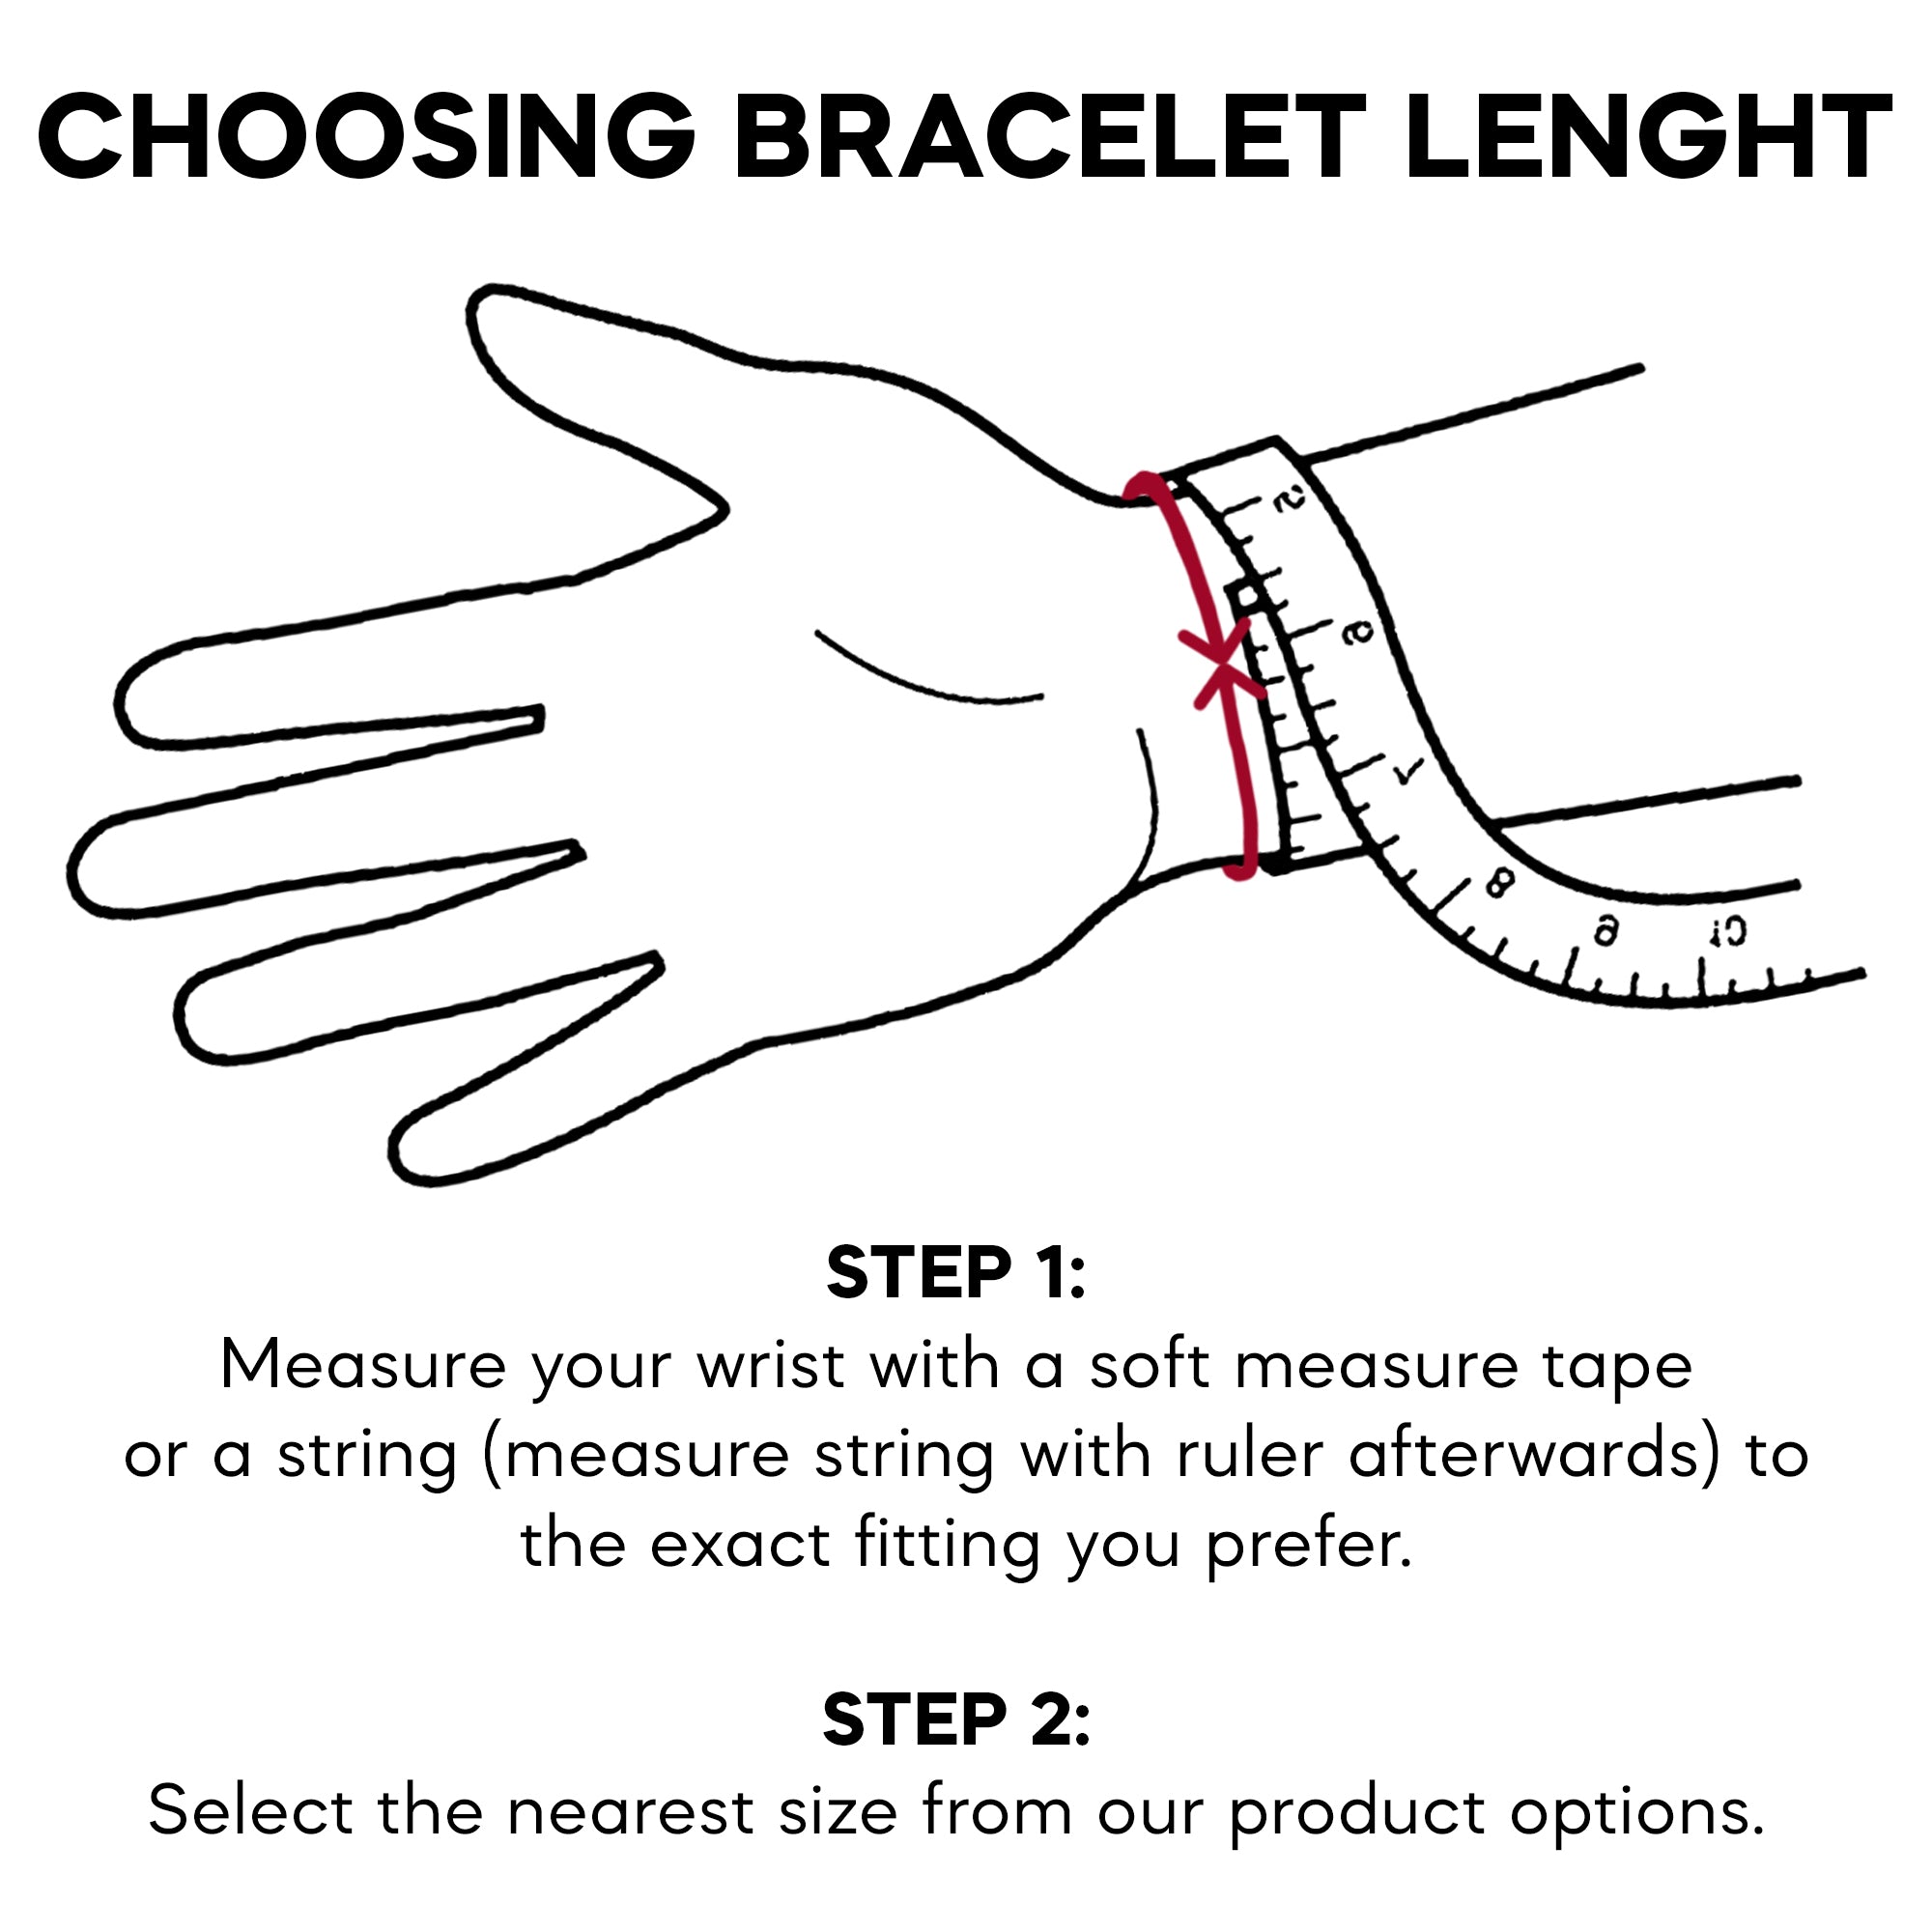 Choosing bracelet length